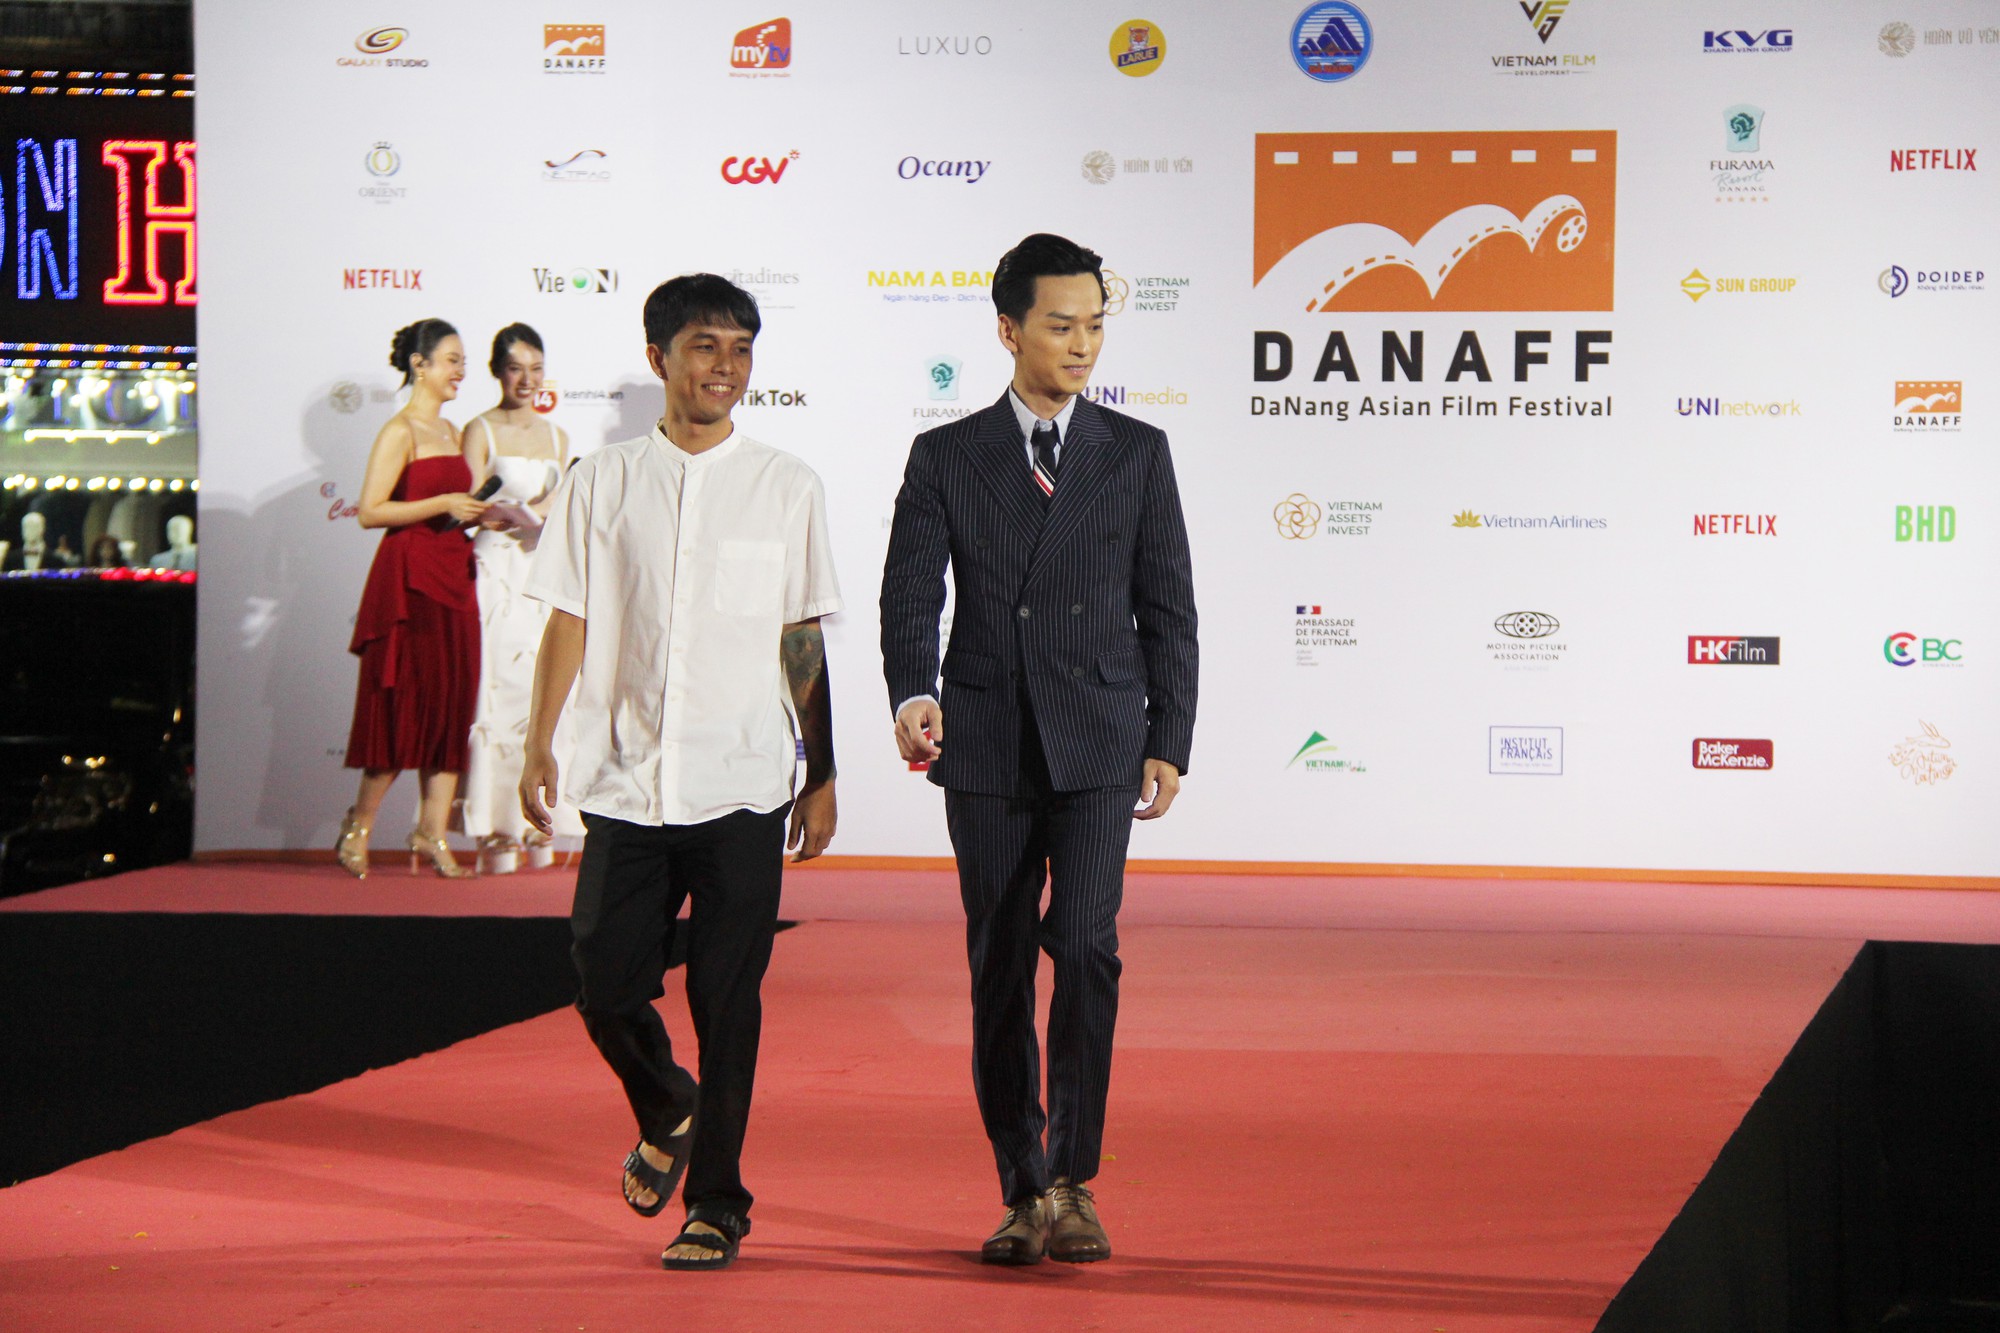 Diễn viên Nhà bà Nữ, Bố Già tham dự Liên hoan phim DANAFF I - Ảnh 11.